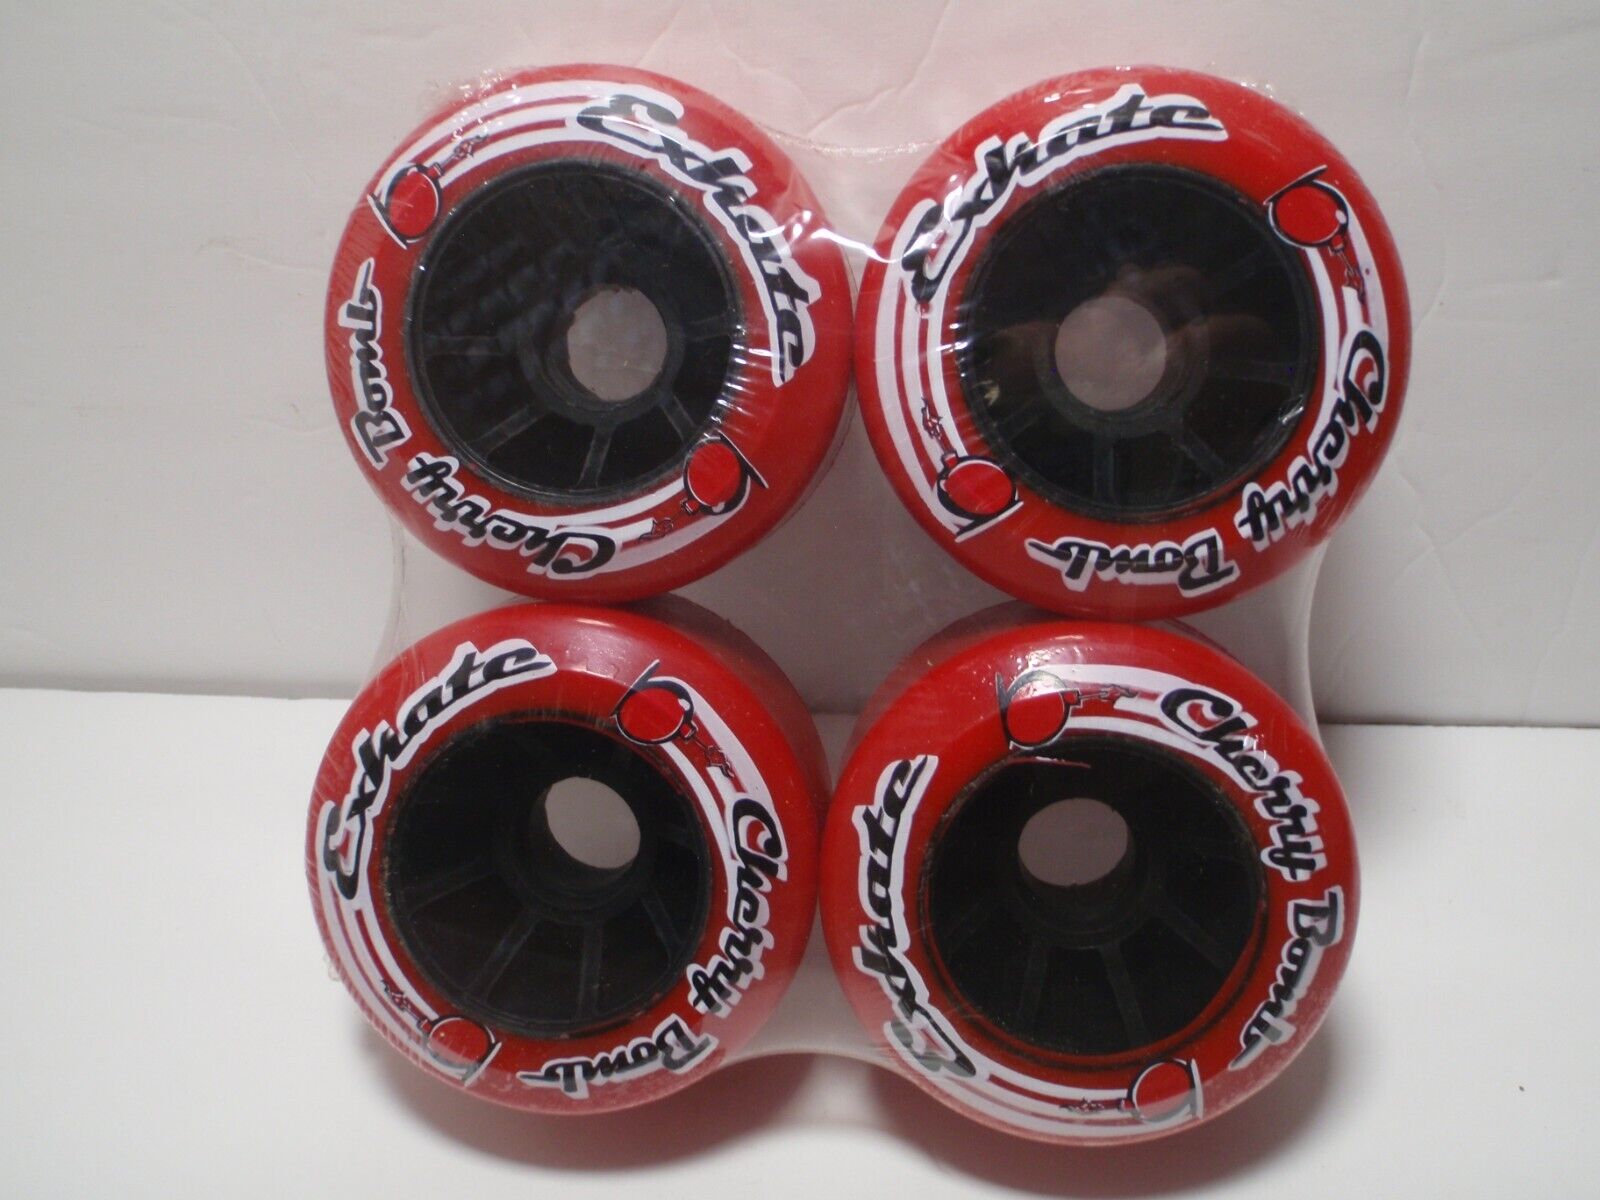 Exkate 82mm Red Cherry Bomb 78a Longboard Wheels Pack Of 4 Nip Skateboard